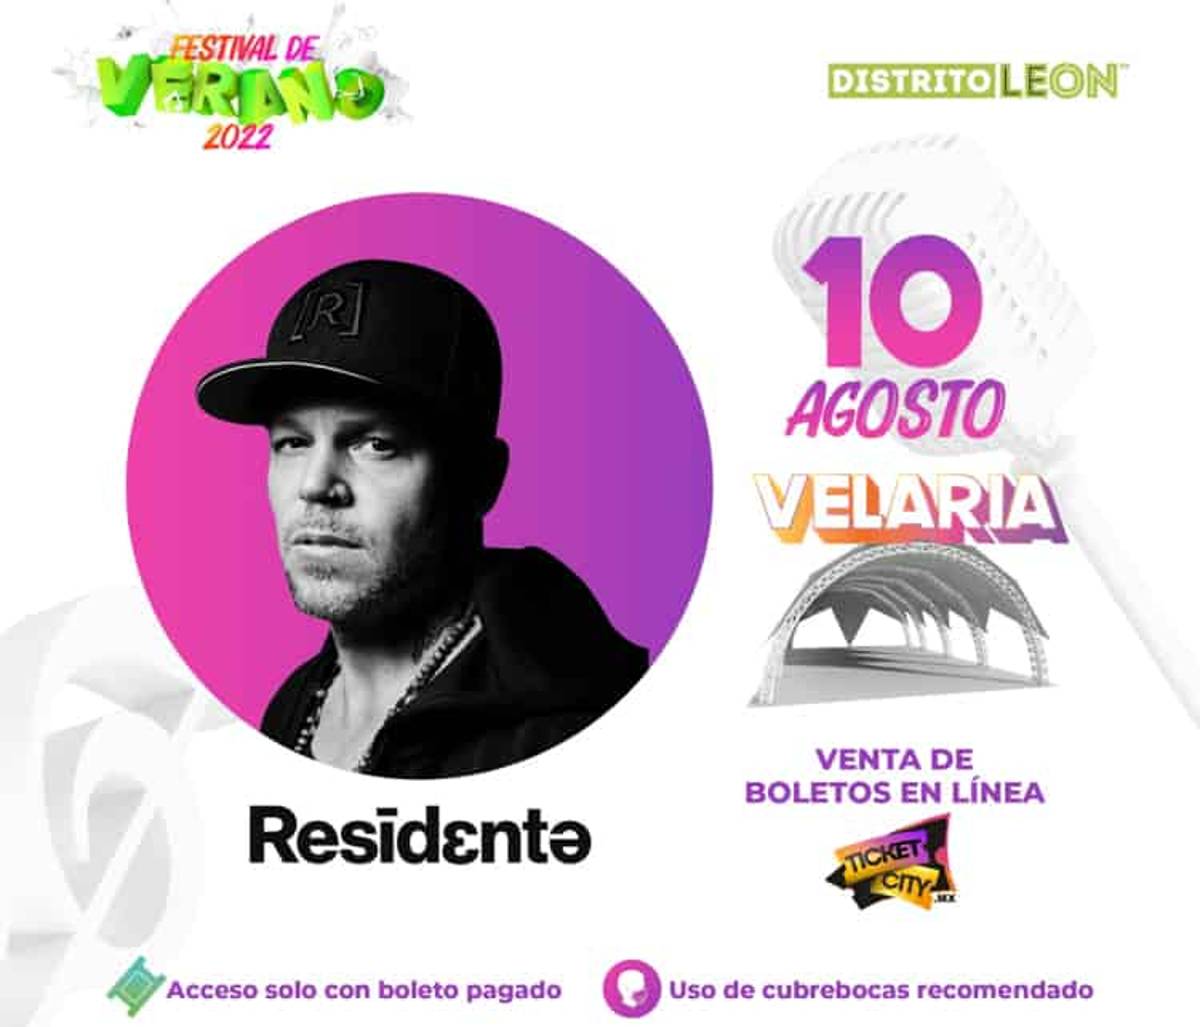 Se ha confirmado la participación en el Festival de Verano León 2022 del vocalista de Calle 13, Residente